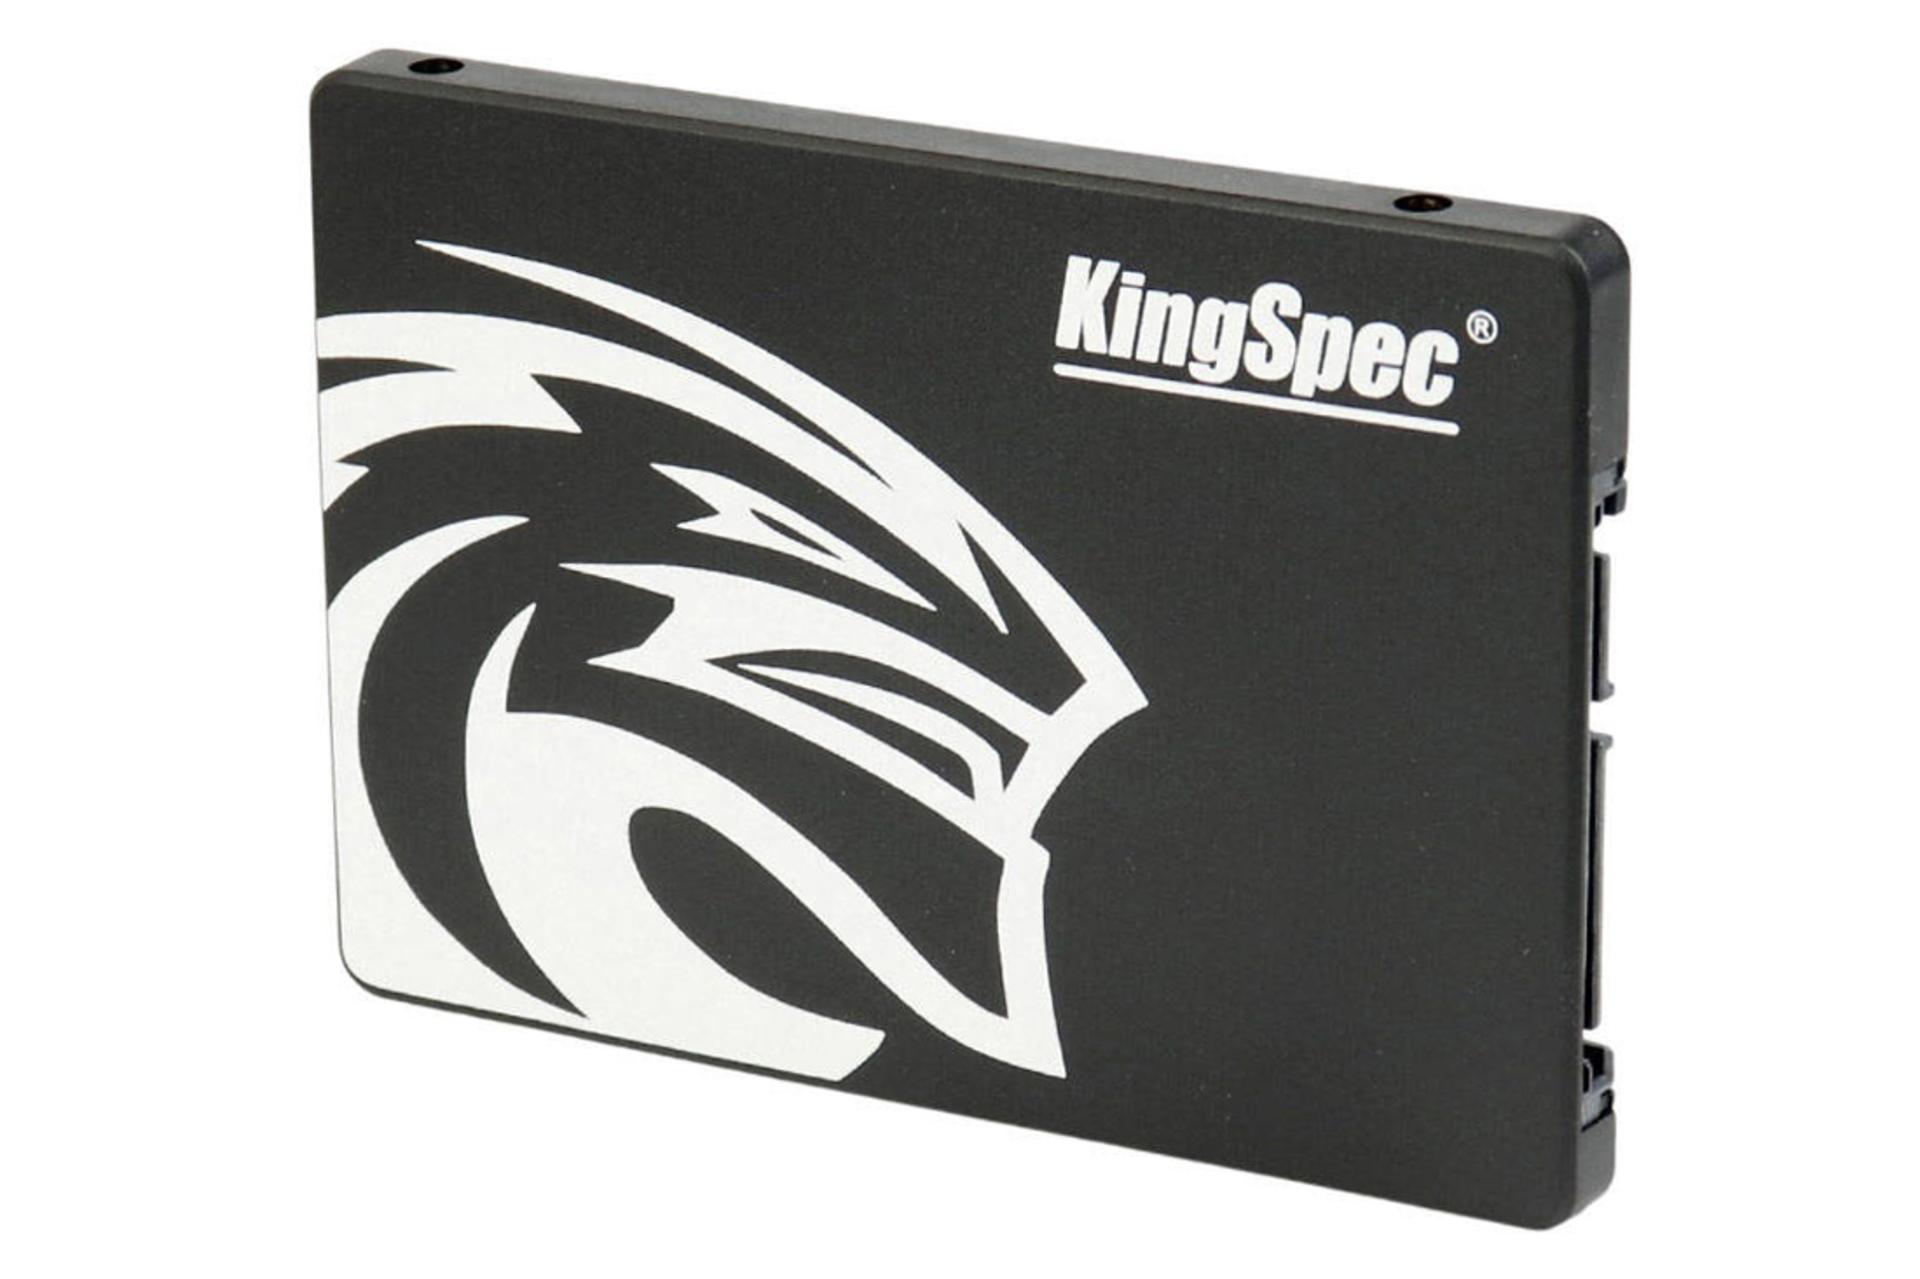 ابعاد SSD کینگ اسپک P3 SATA 2.5 Inch ظرفیت 512 گیگابایت